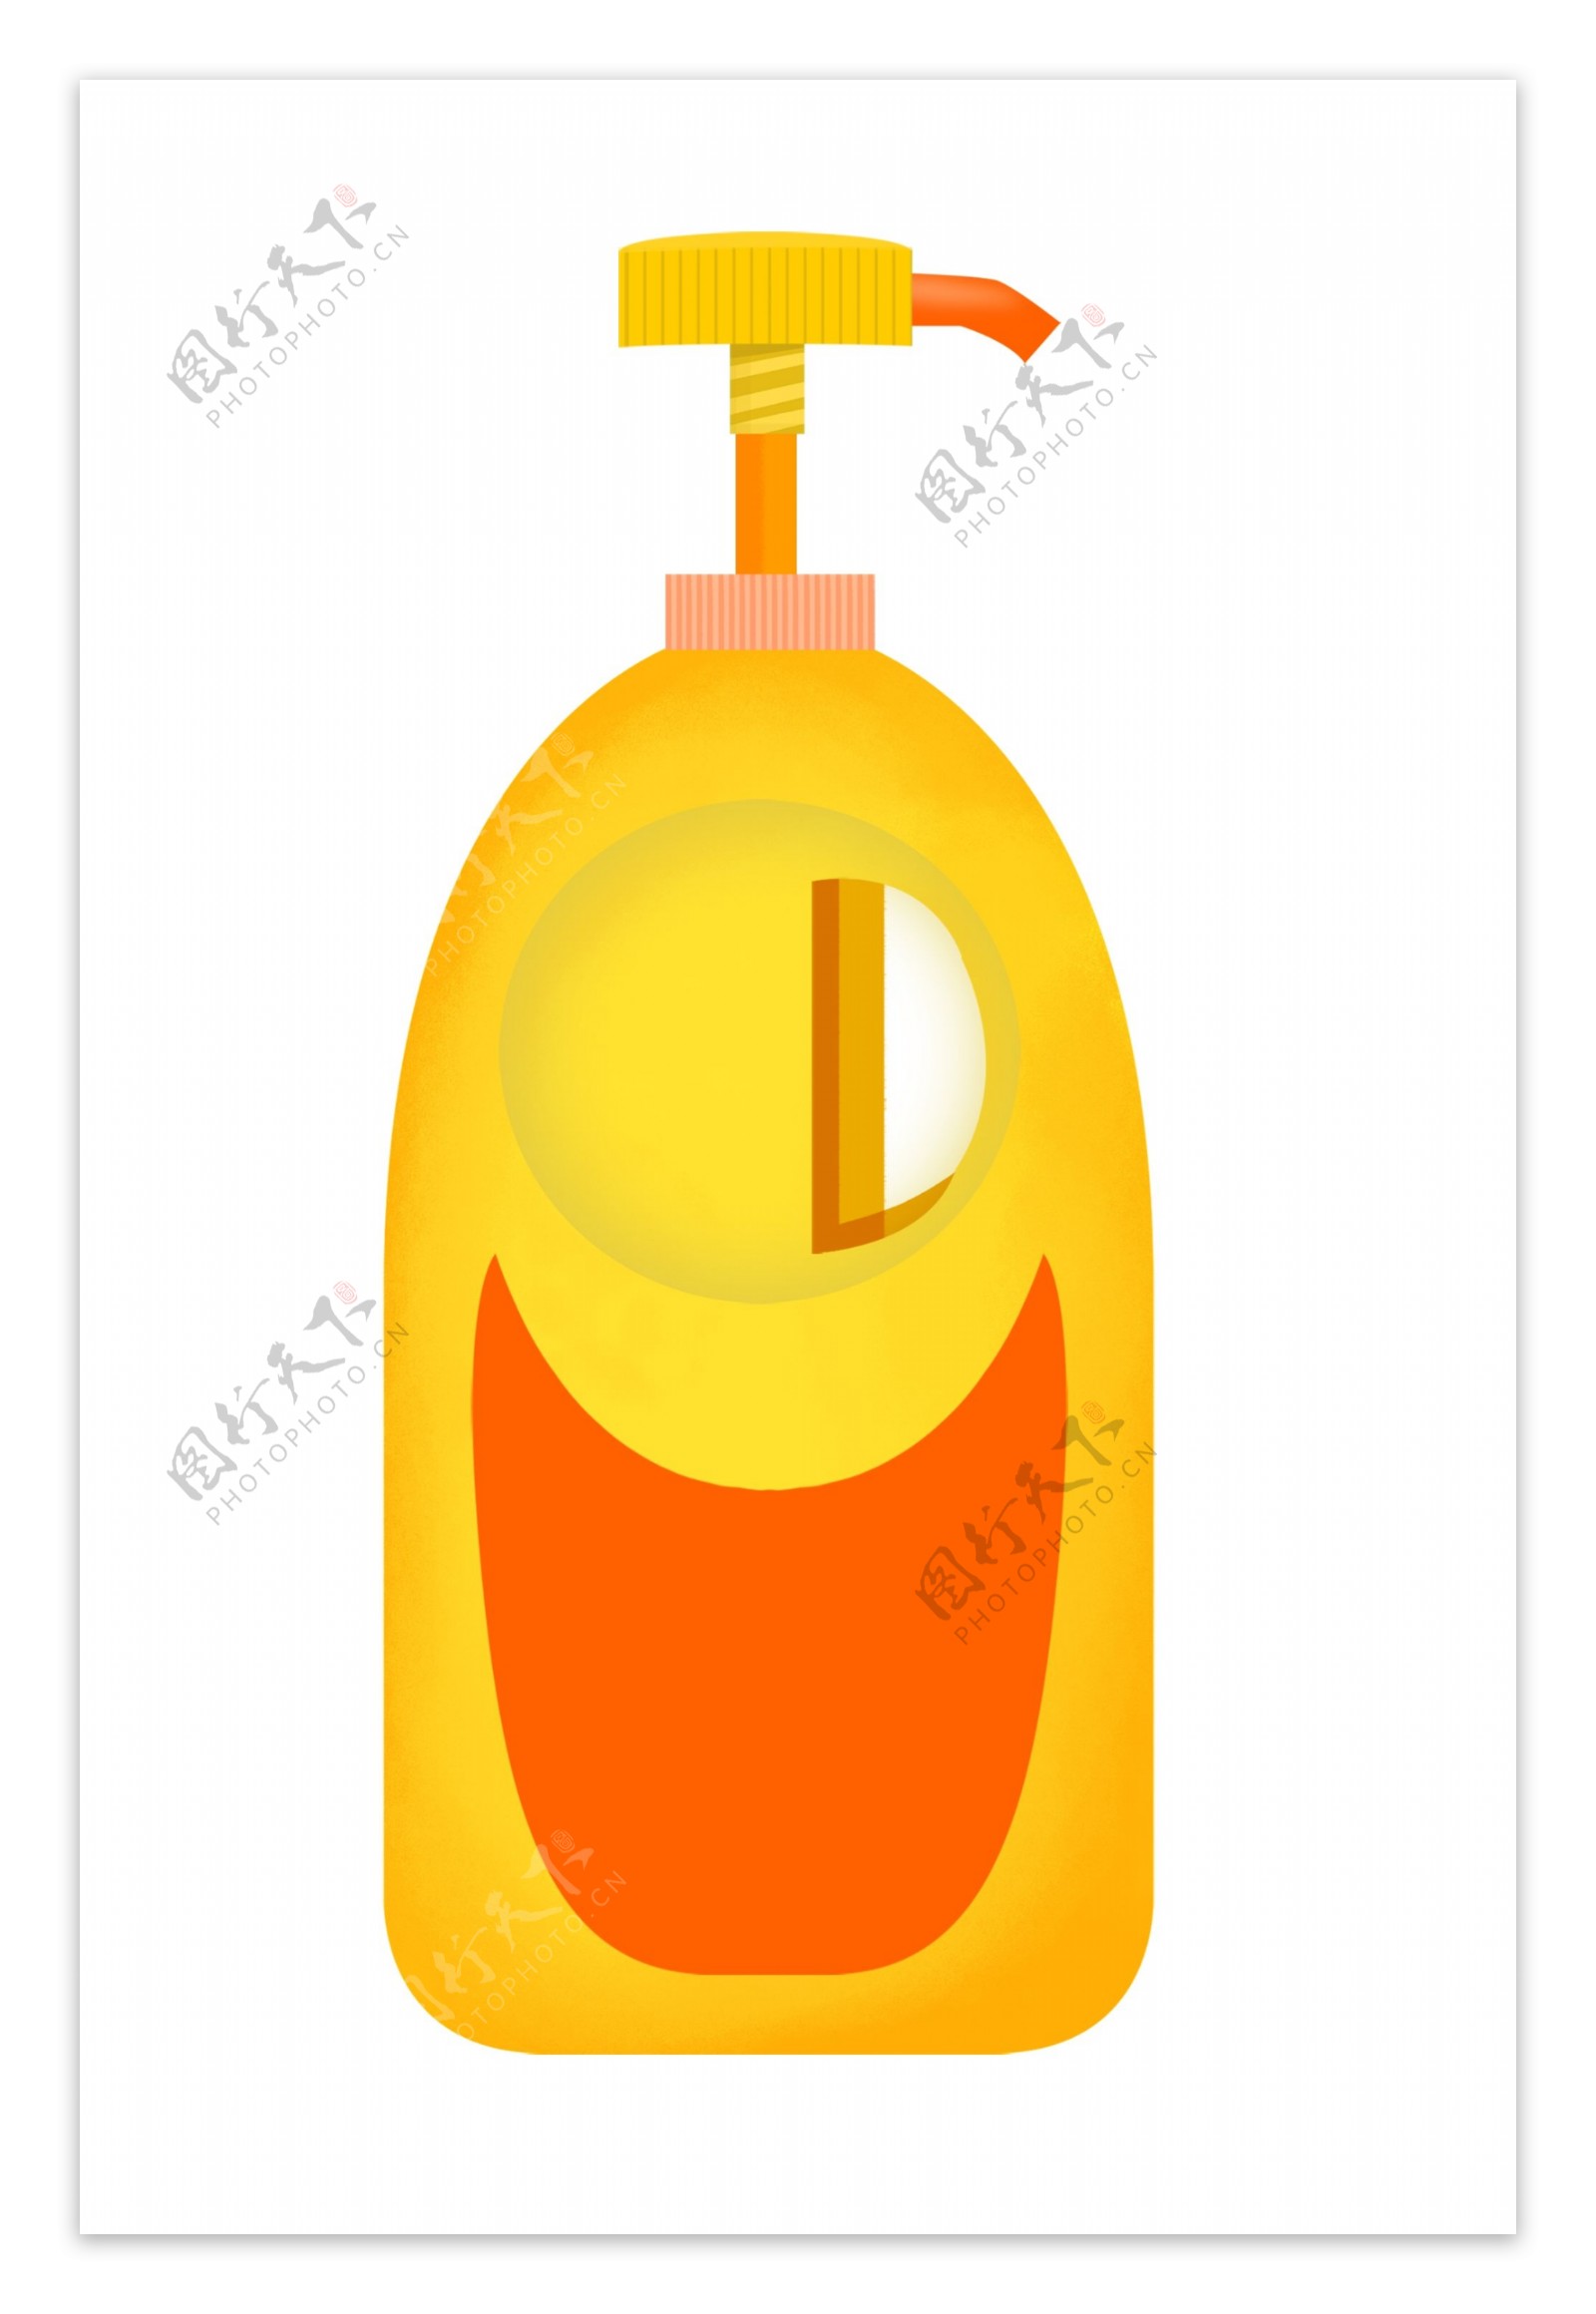 橘黄色的瓶子插画